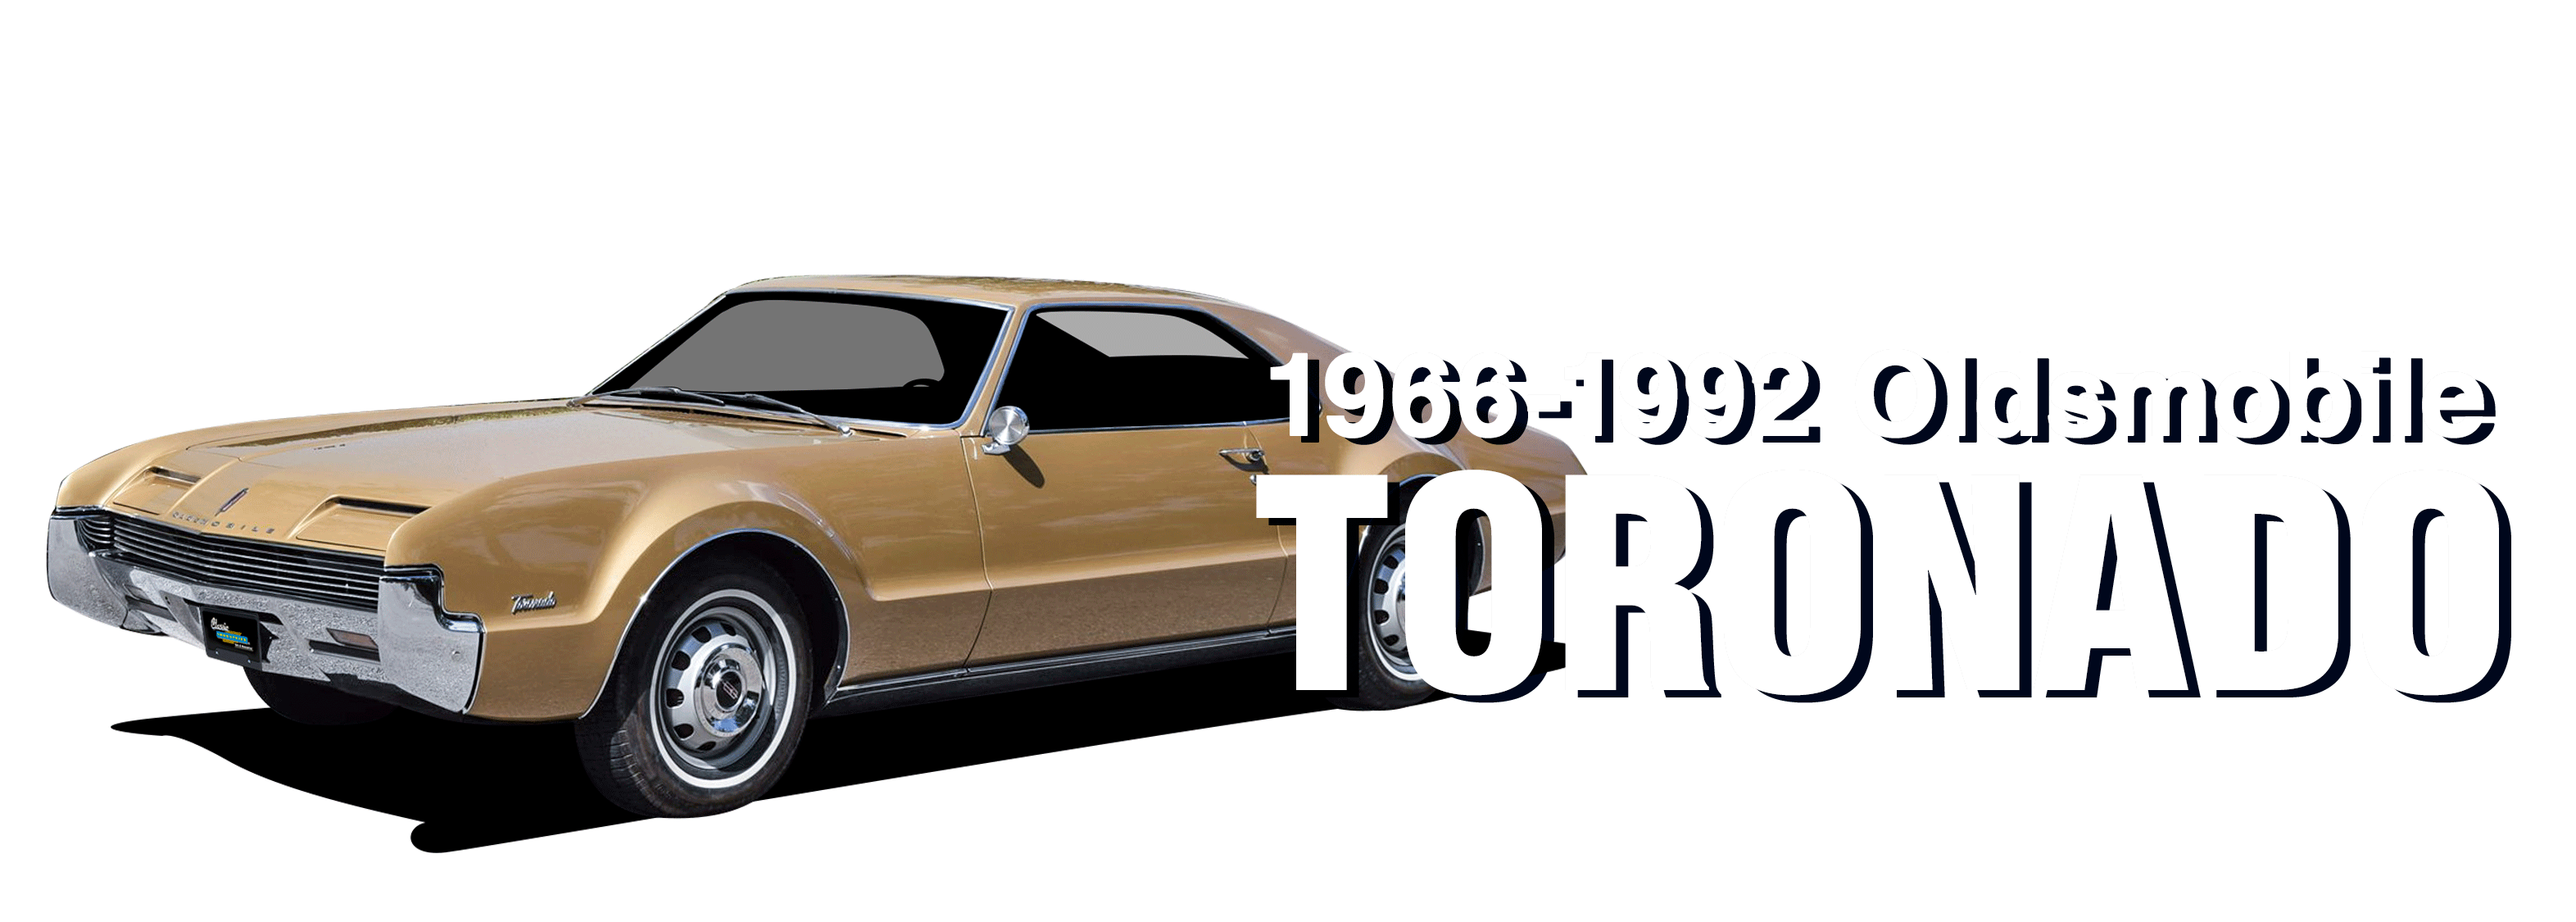 Oldsmobile-Toronado-vehicle-desktop_V2